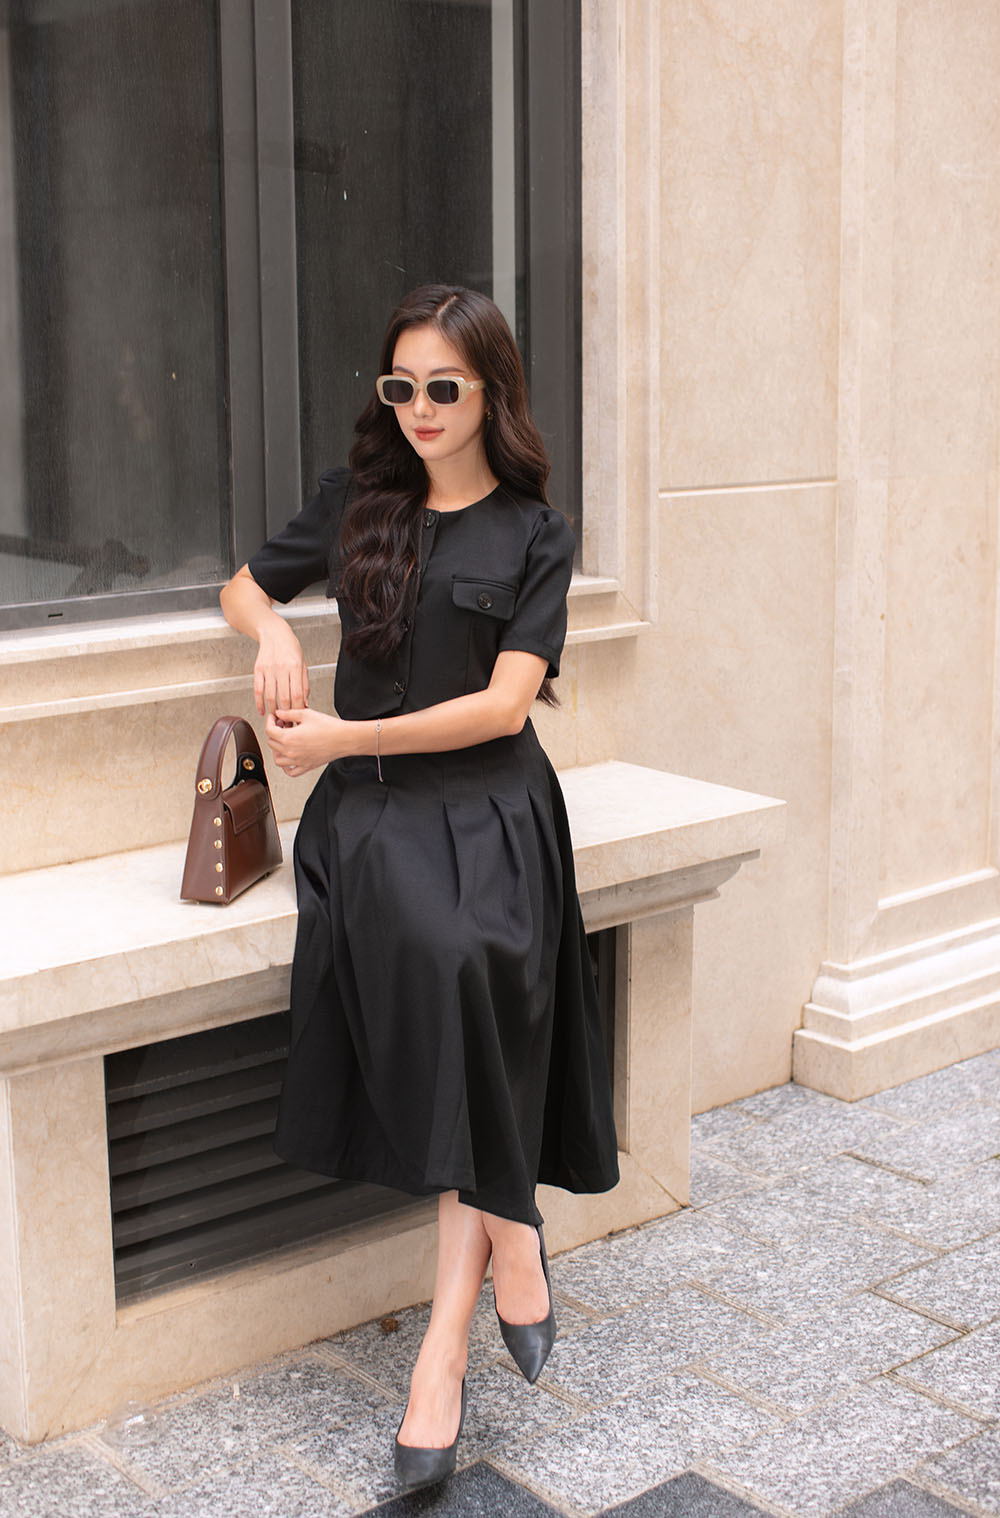 DojiSet set váy gile đen phiên bản giới hạn, concept búp bê restock nhẹ  chuyến cuối nha các nàng ơii 💕💕 Nhanh tay vợt ngay giá #sale đi… |  Instagram